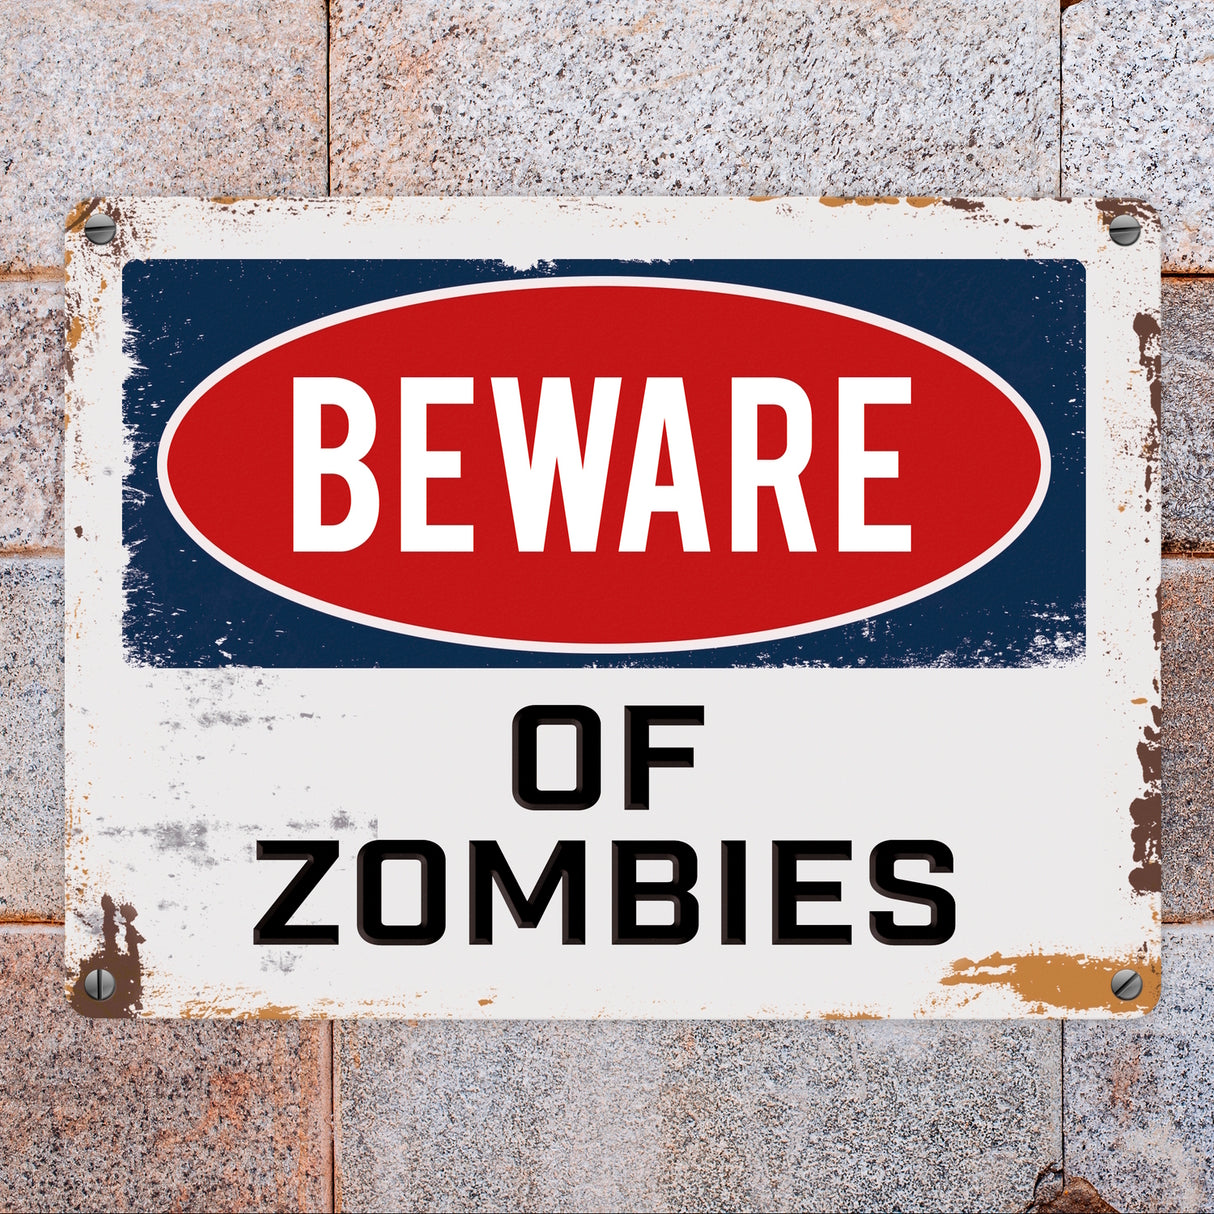 Beware of Zombies Metallschild